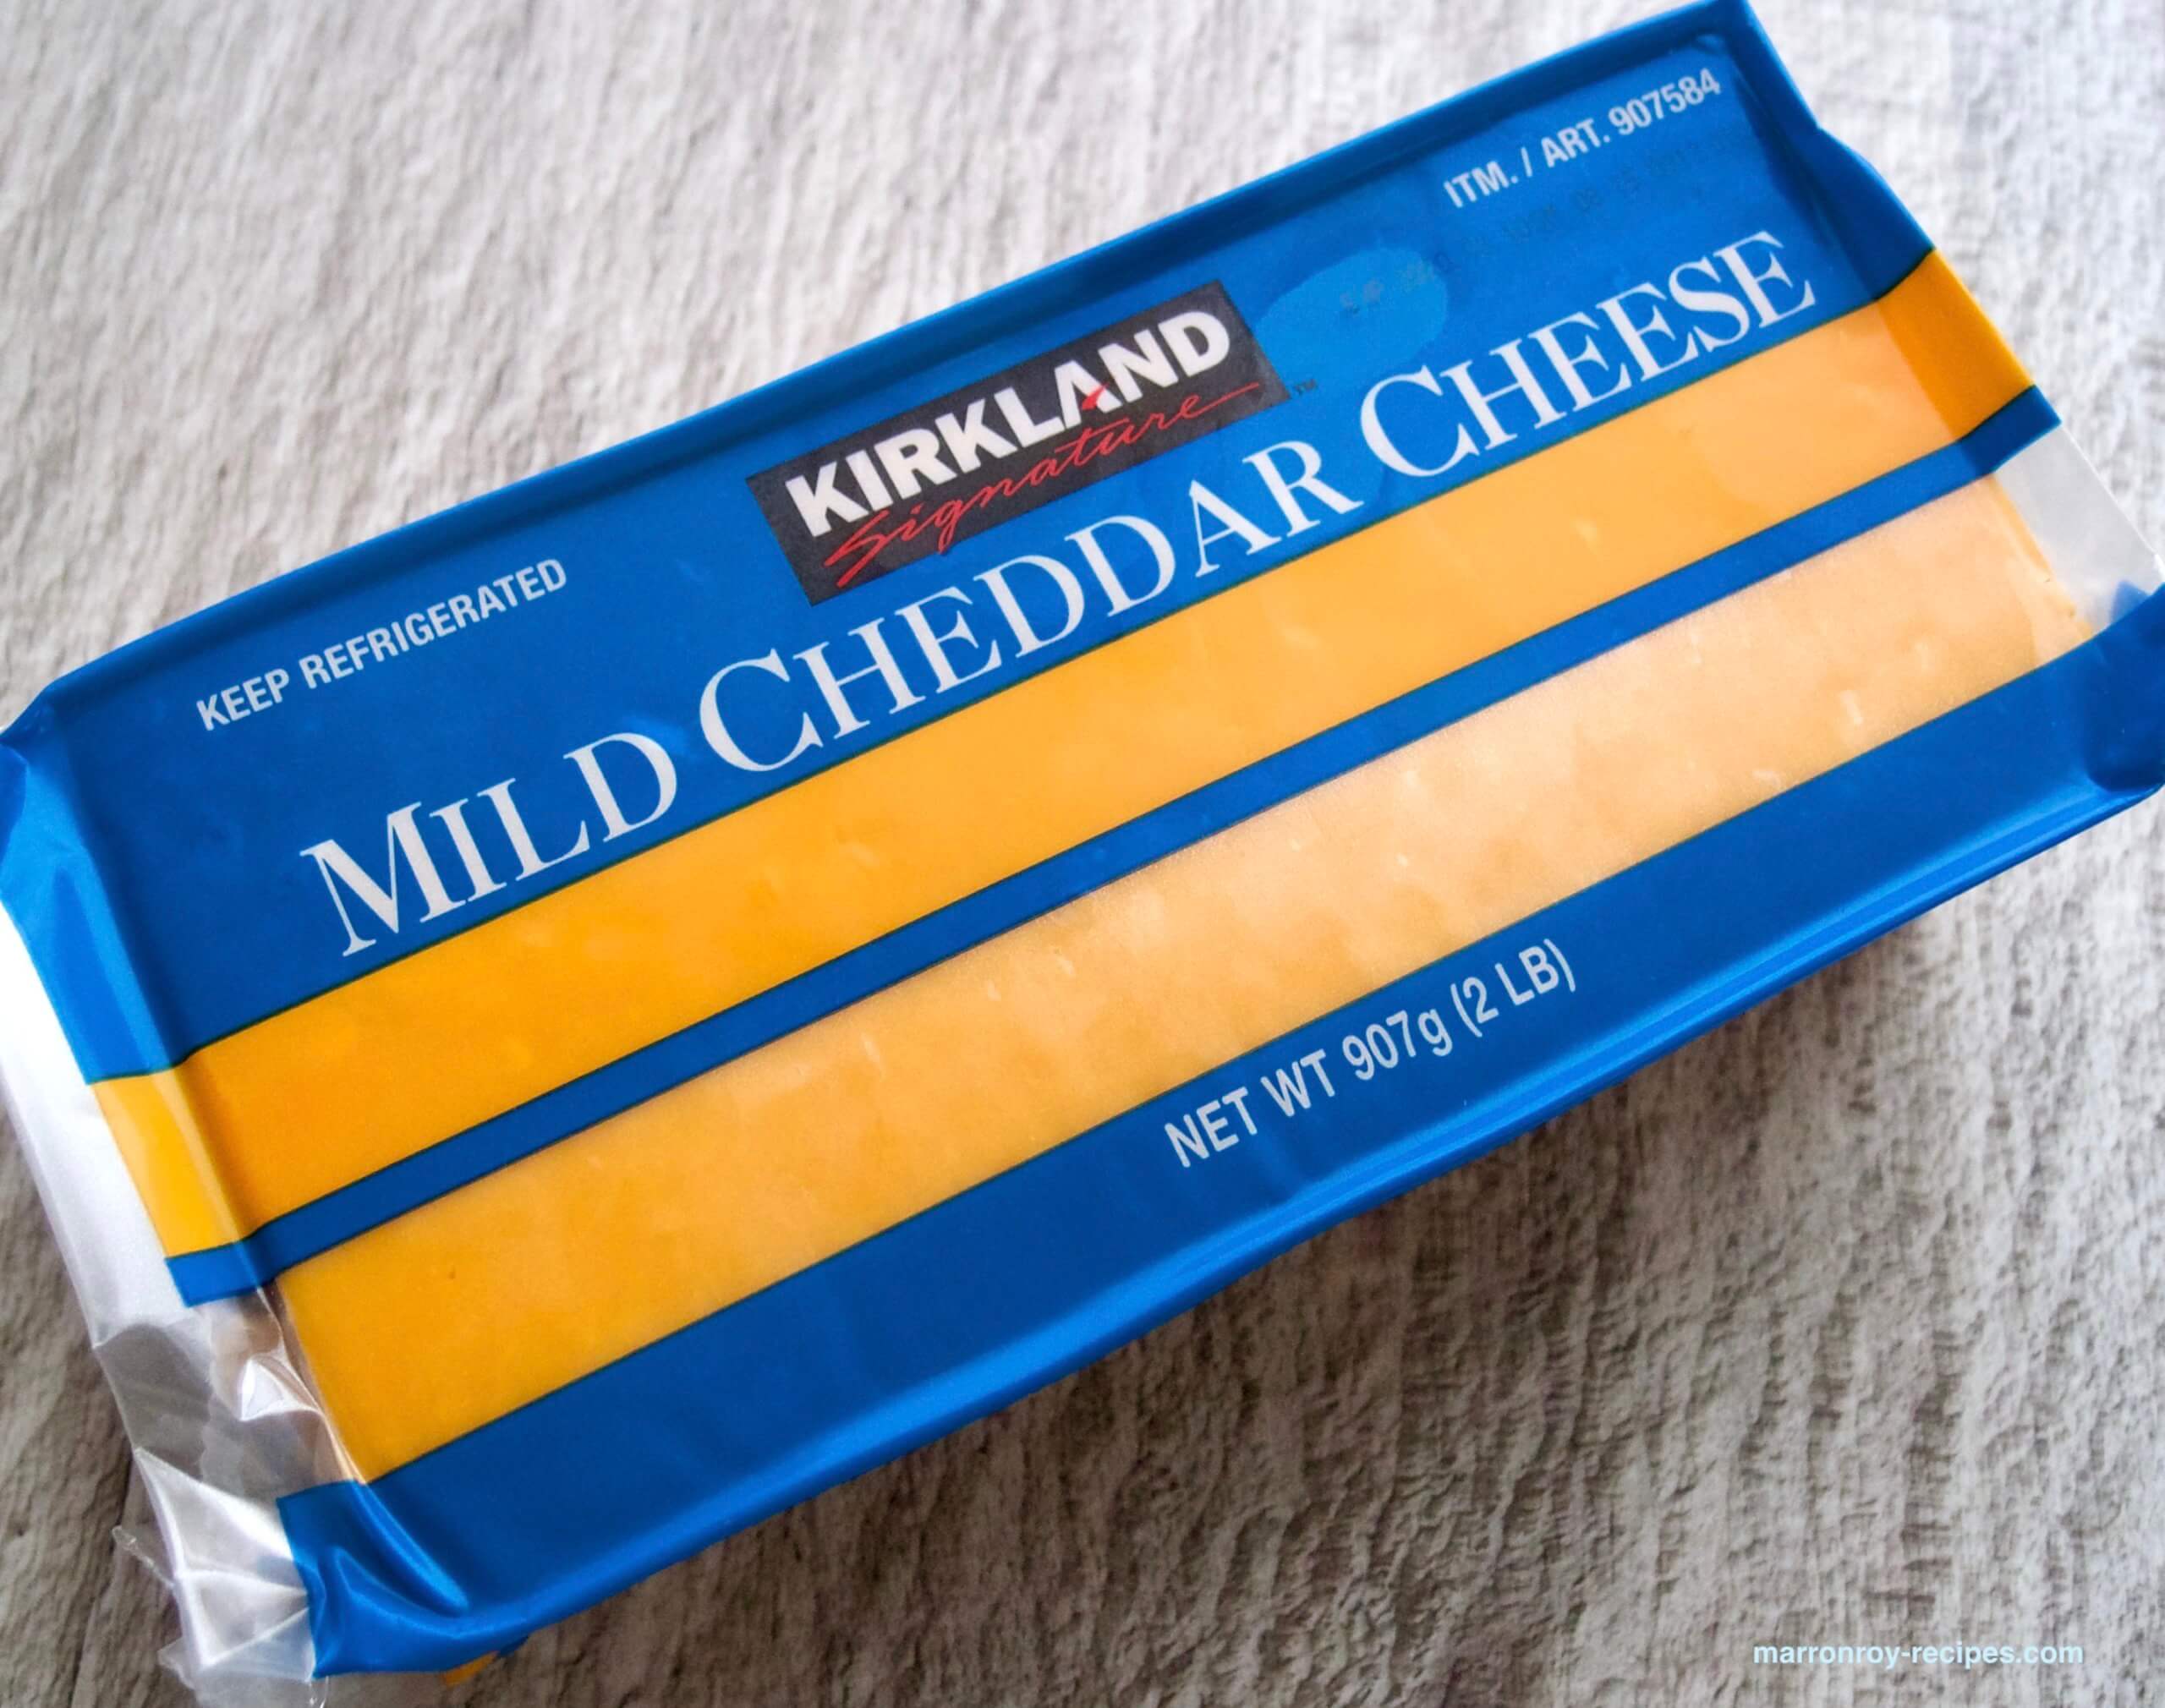 コストコのチーズ“カークランドシグネチャー マイルドチェダーチーズ”でマカロニチーズ